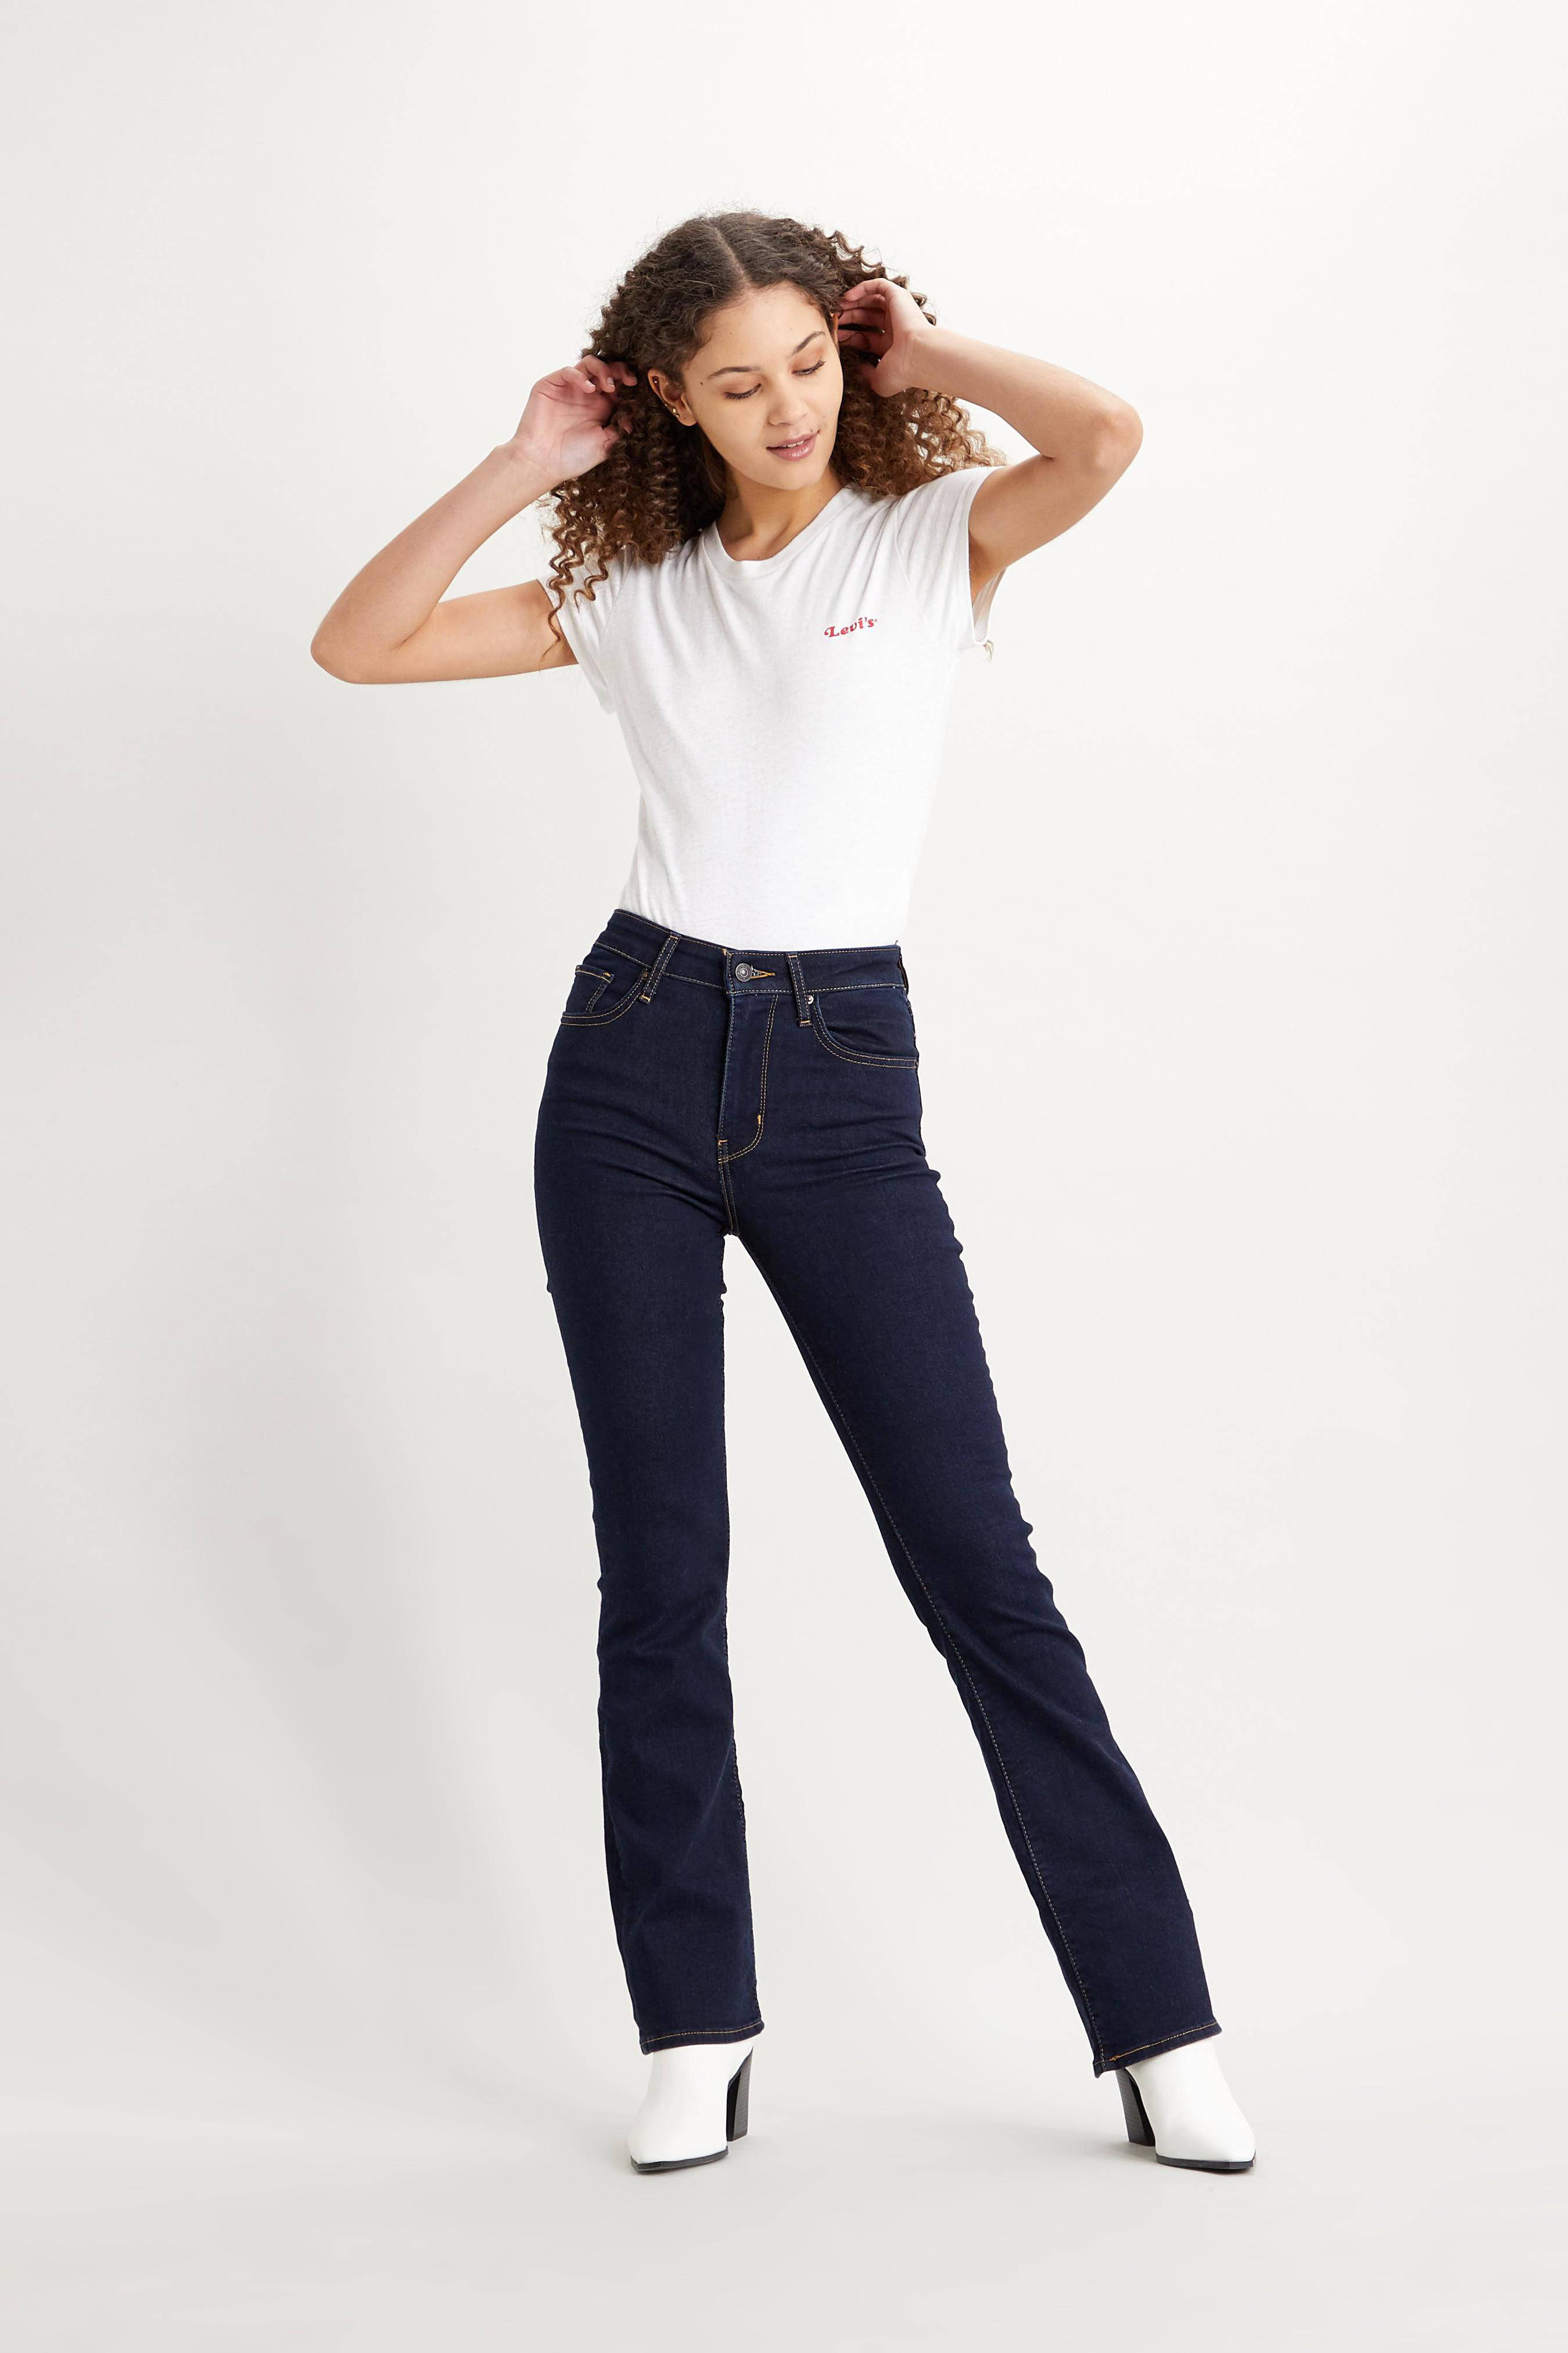 levis 725 original jeans